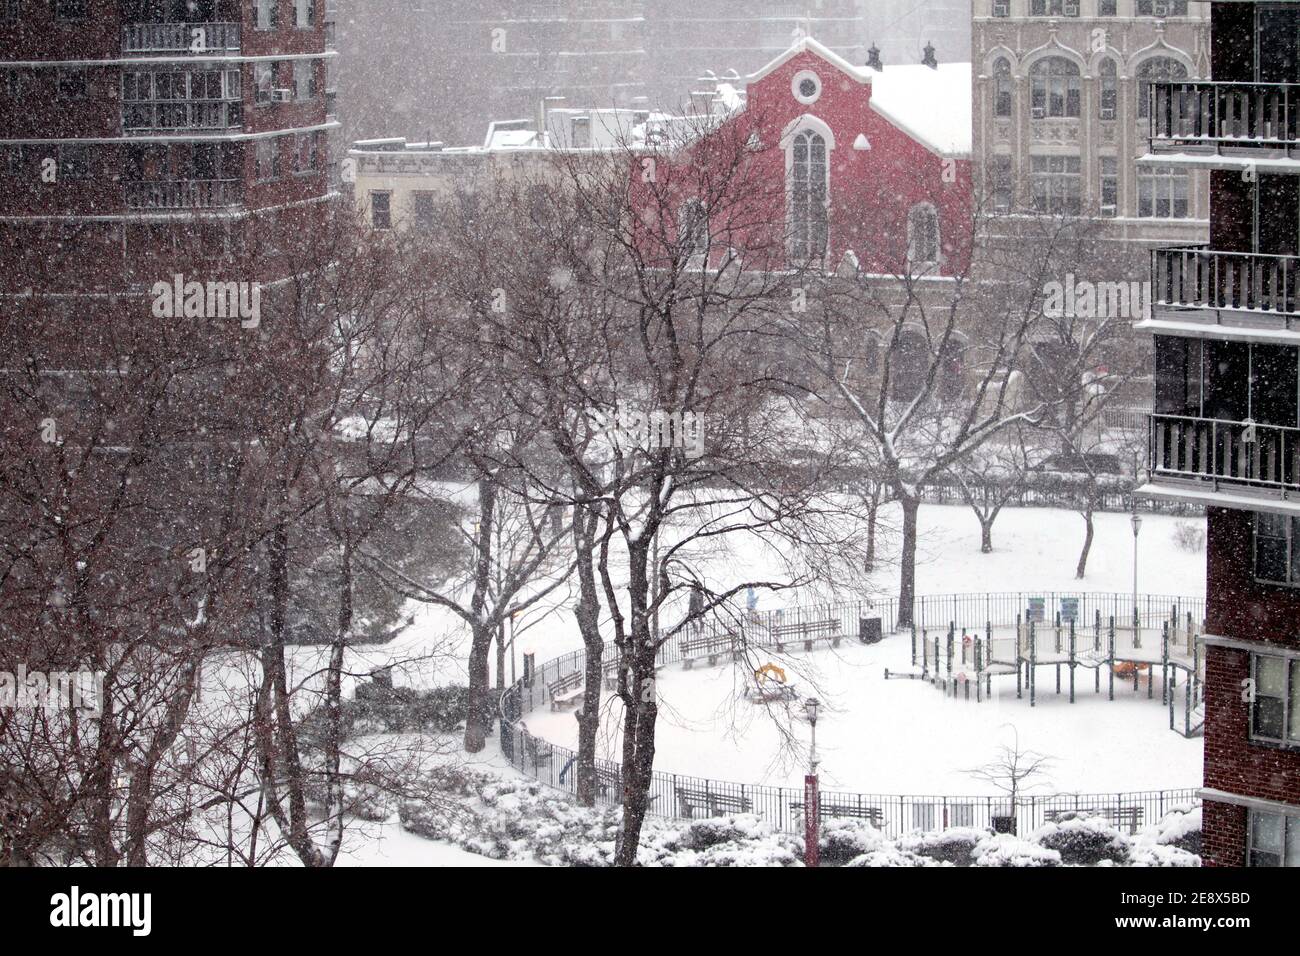 New York City, New York, Stati Uniti. 1 febbraio 2021. La neve cade in un piccolo parco nella sezione Chelsea di Manhattan come una grande tempesta di neve ha coperto l'area di New York City oggi. Si prevede che la città potrebbe ottenere fino a due piedi di neve prima che la tempesta si sottomette Credit: Adam Stoltman / Alamy Live News Foto Stock